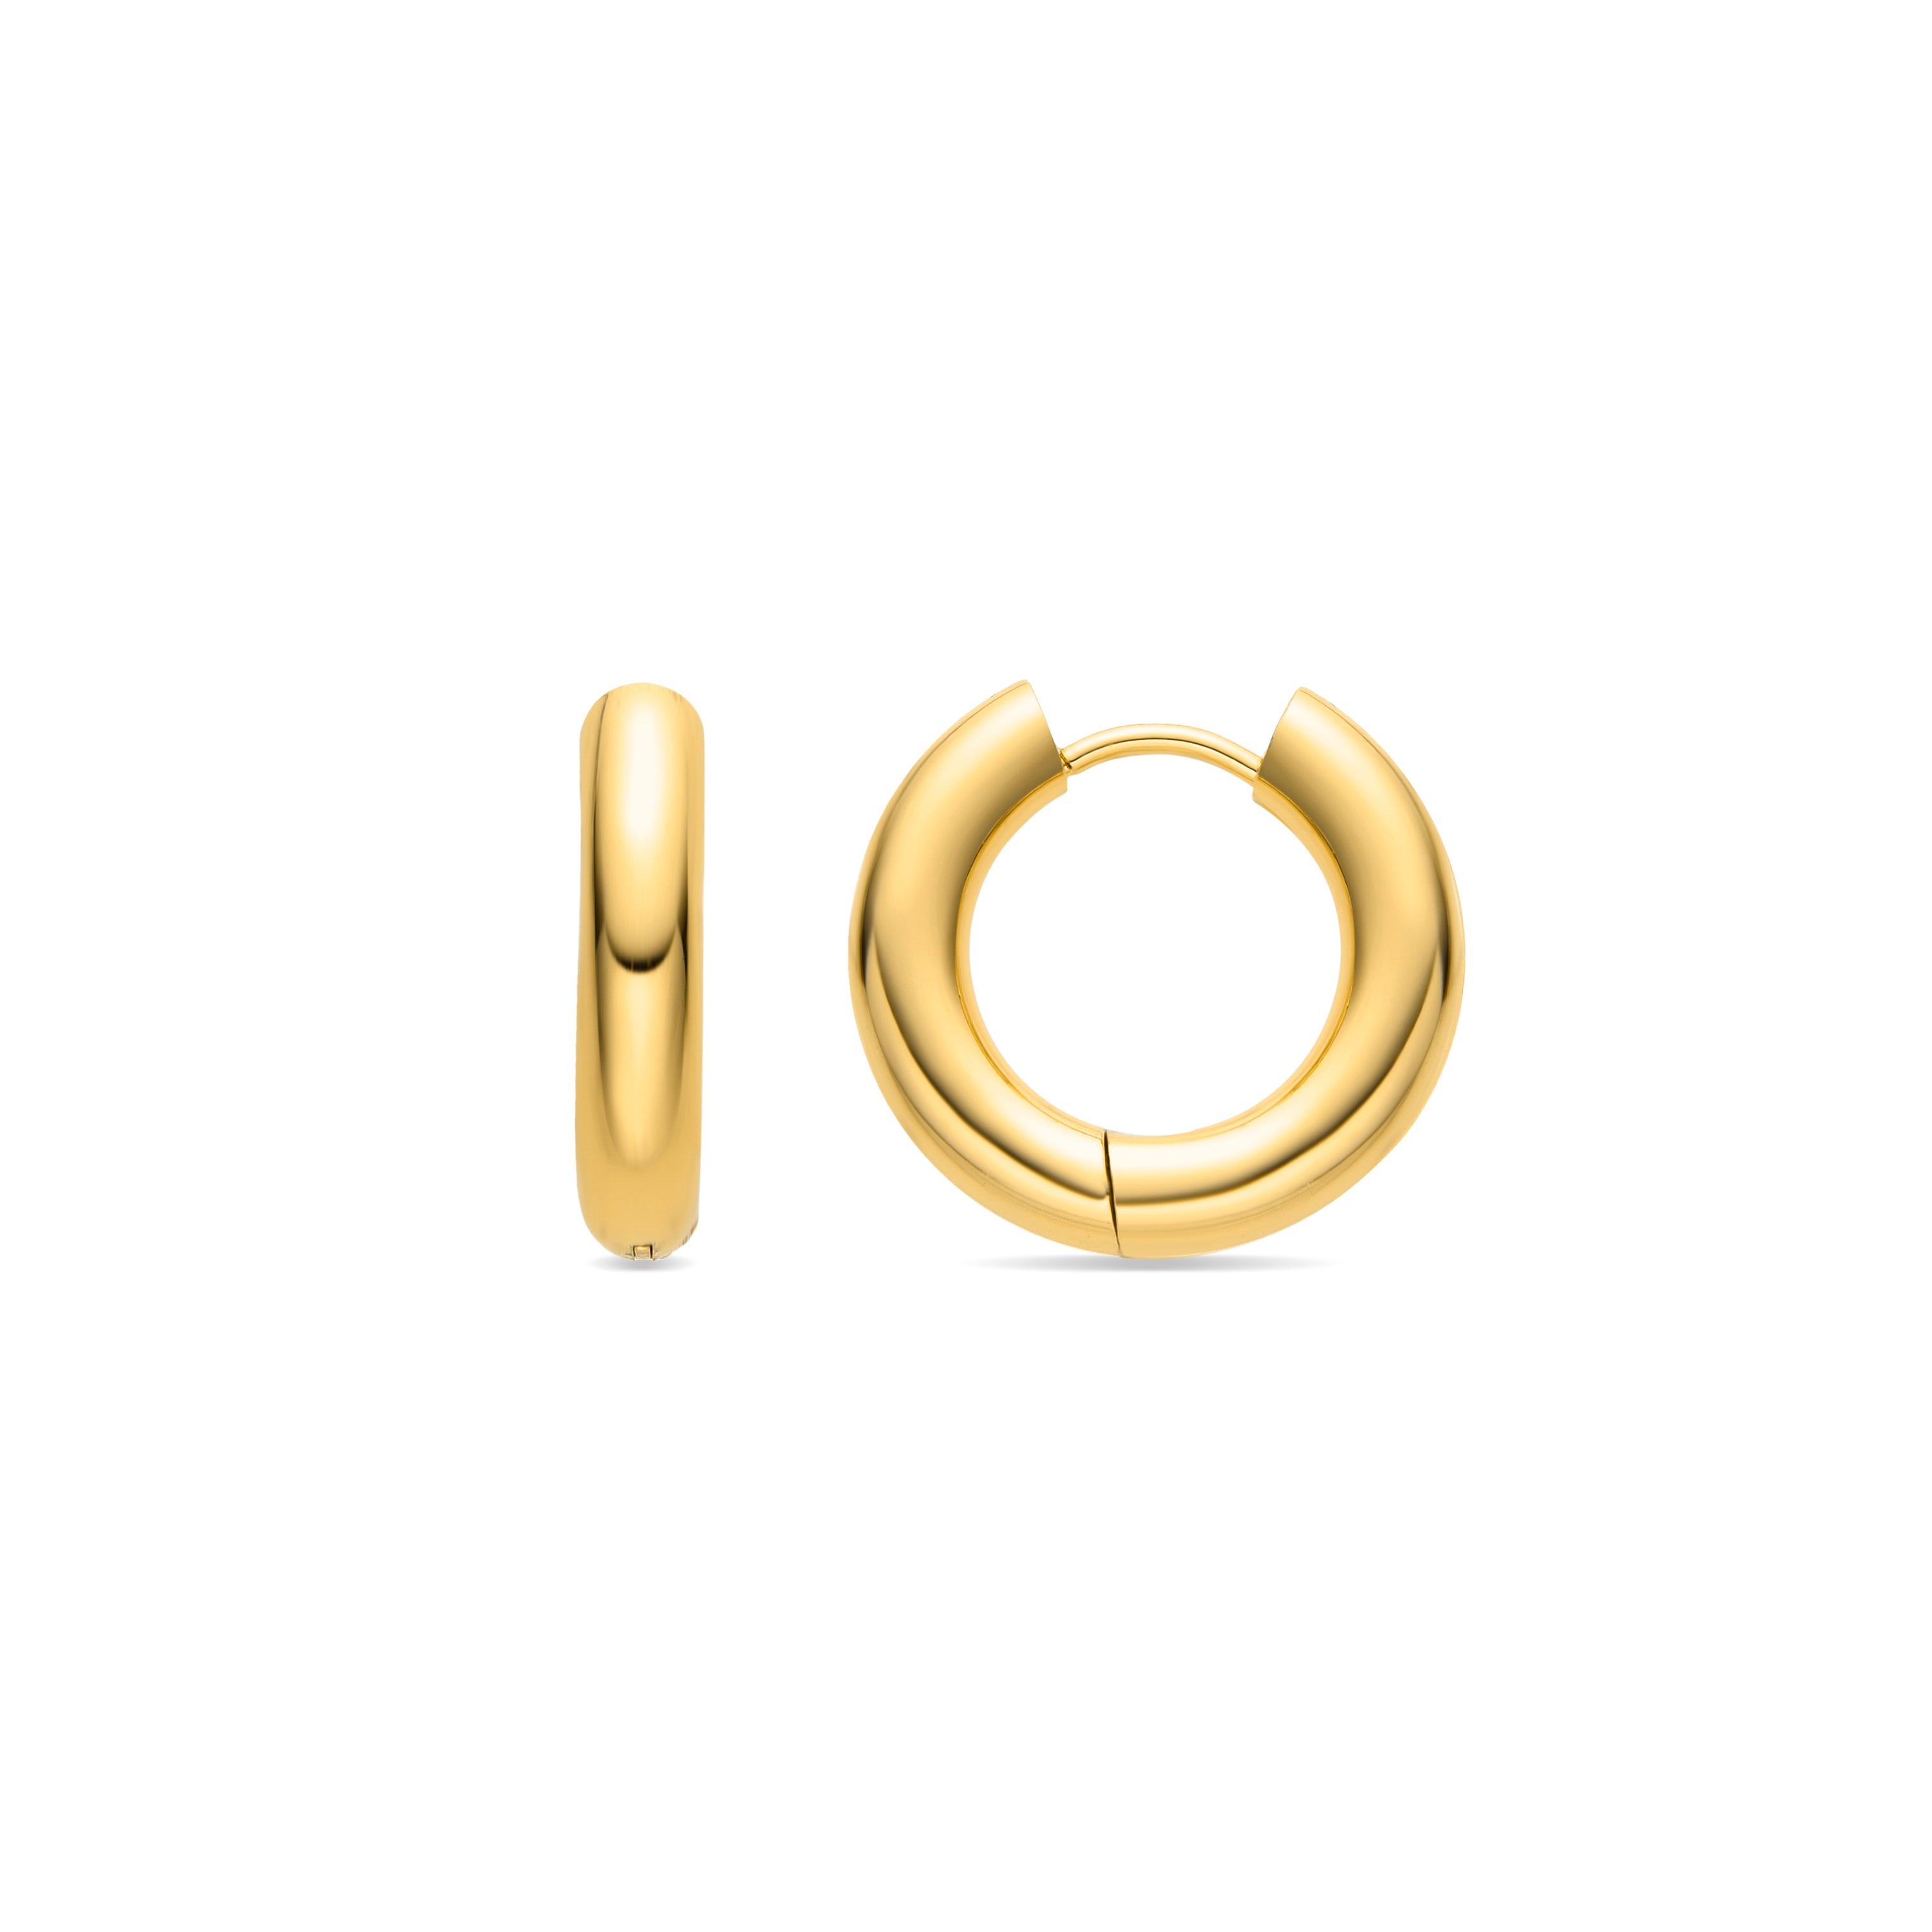 Helali earrings 18k yellow gold finish